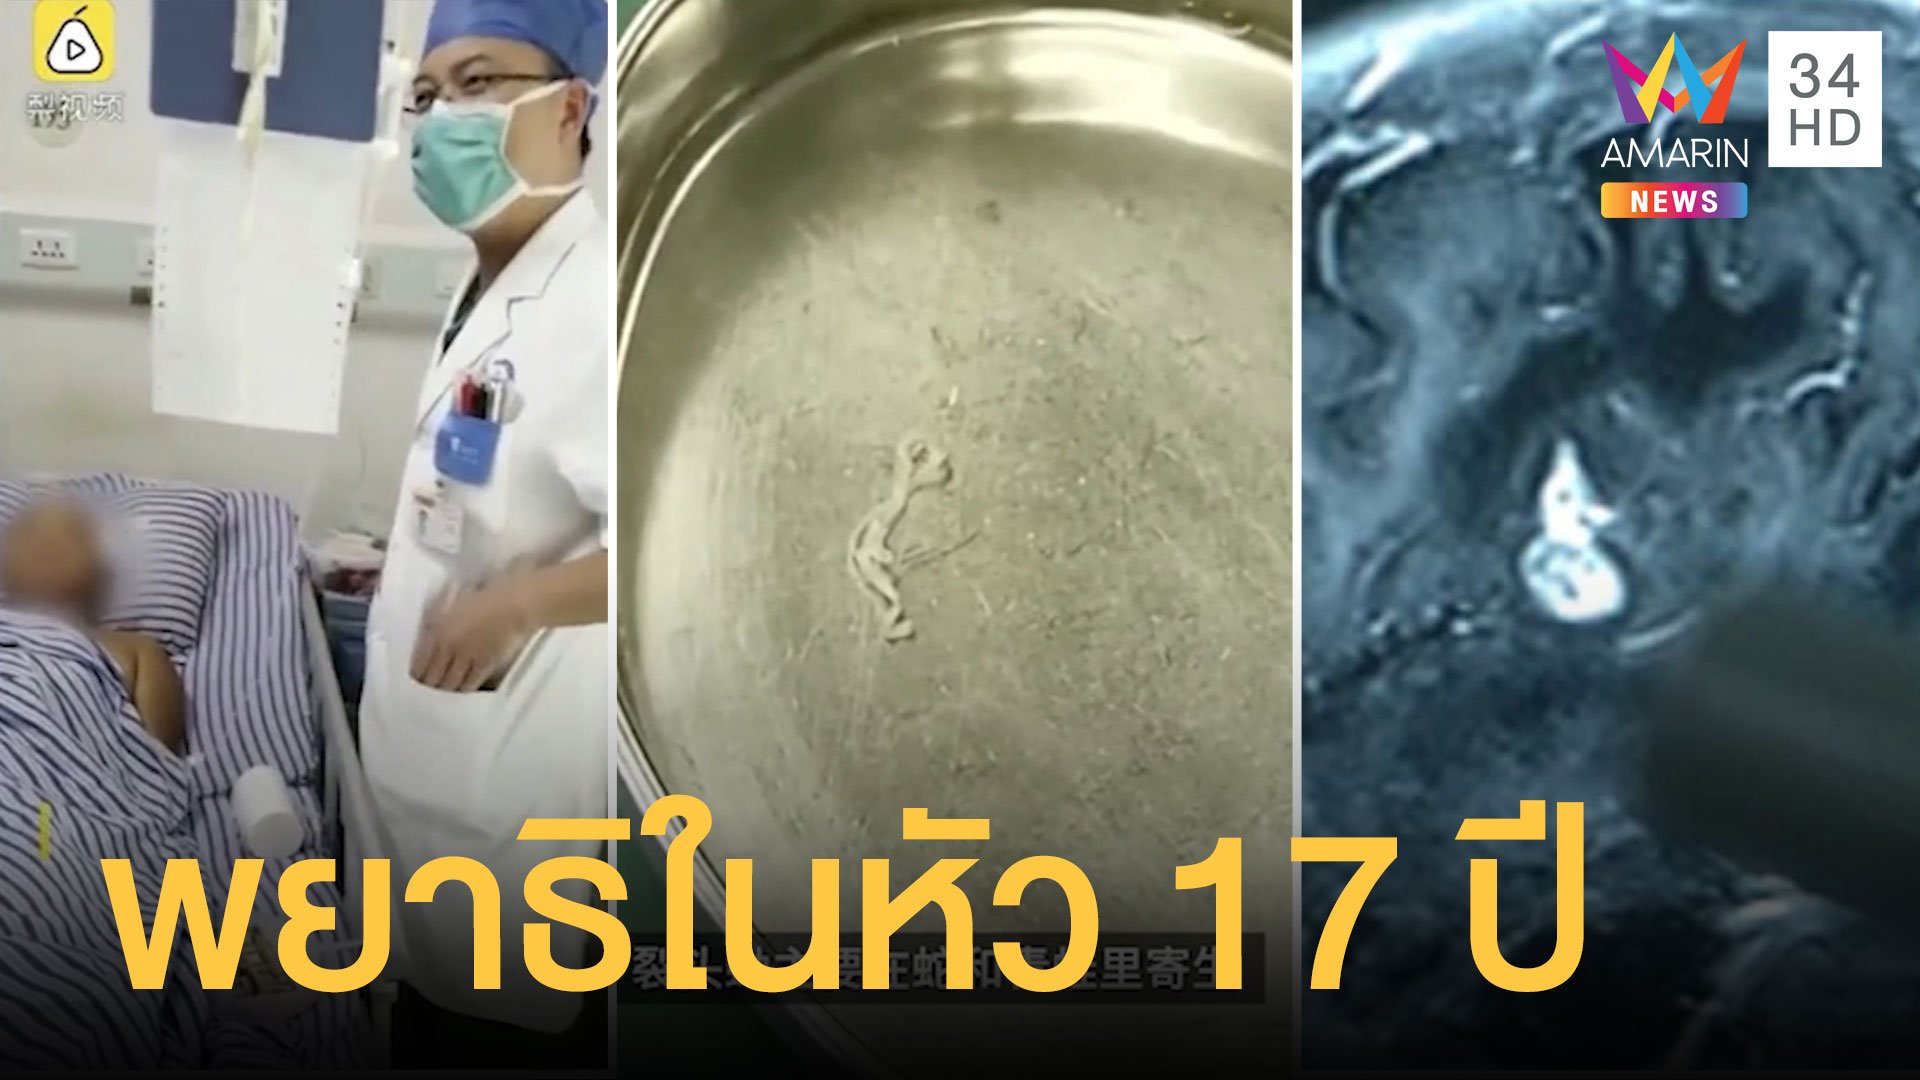  สยอง พยาธิตัวตืดเลี้อยในสมอง พบอาศัยอยู่ในตัวมานาน 17 ปี | ข่าวอรุณอมรินทร์ | 30 ส.ค. 63 | AMARIN TVHD34